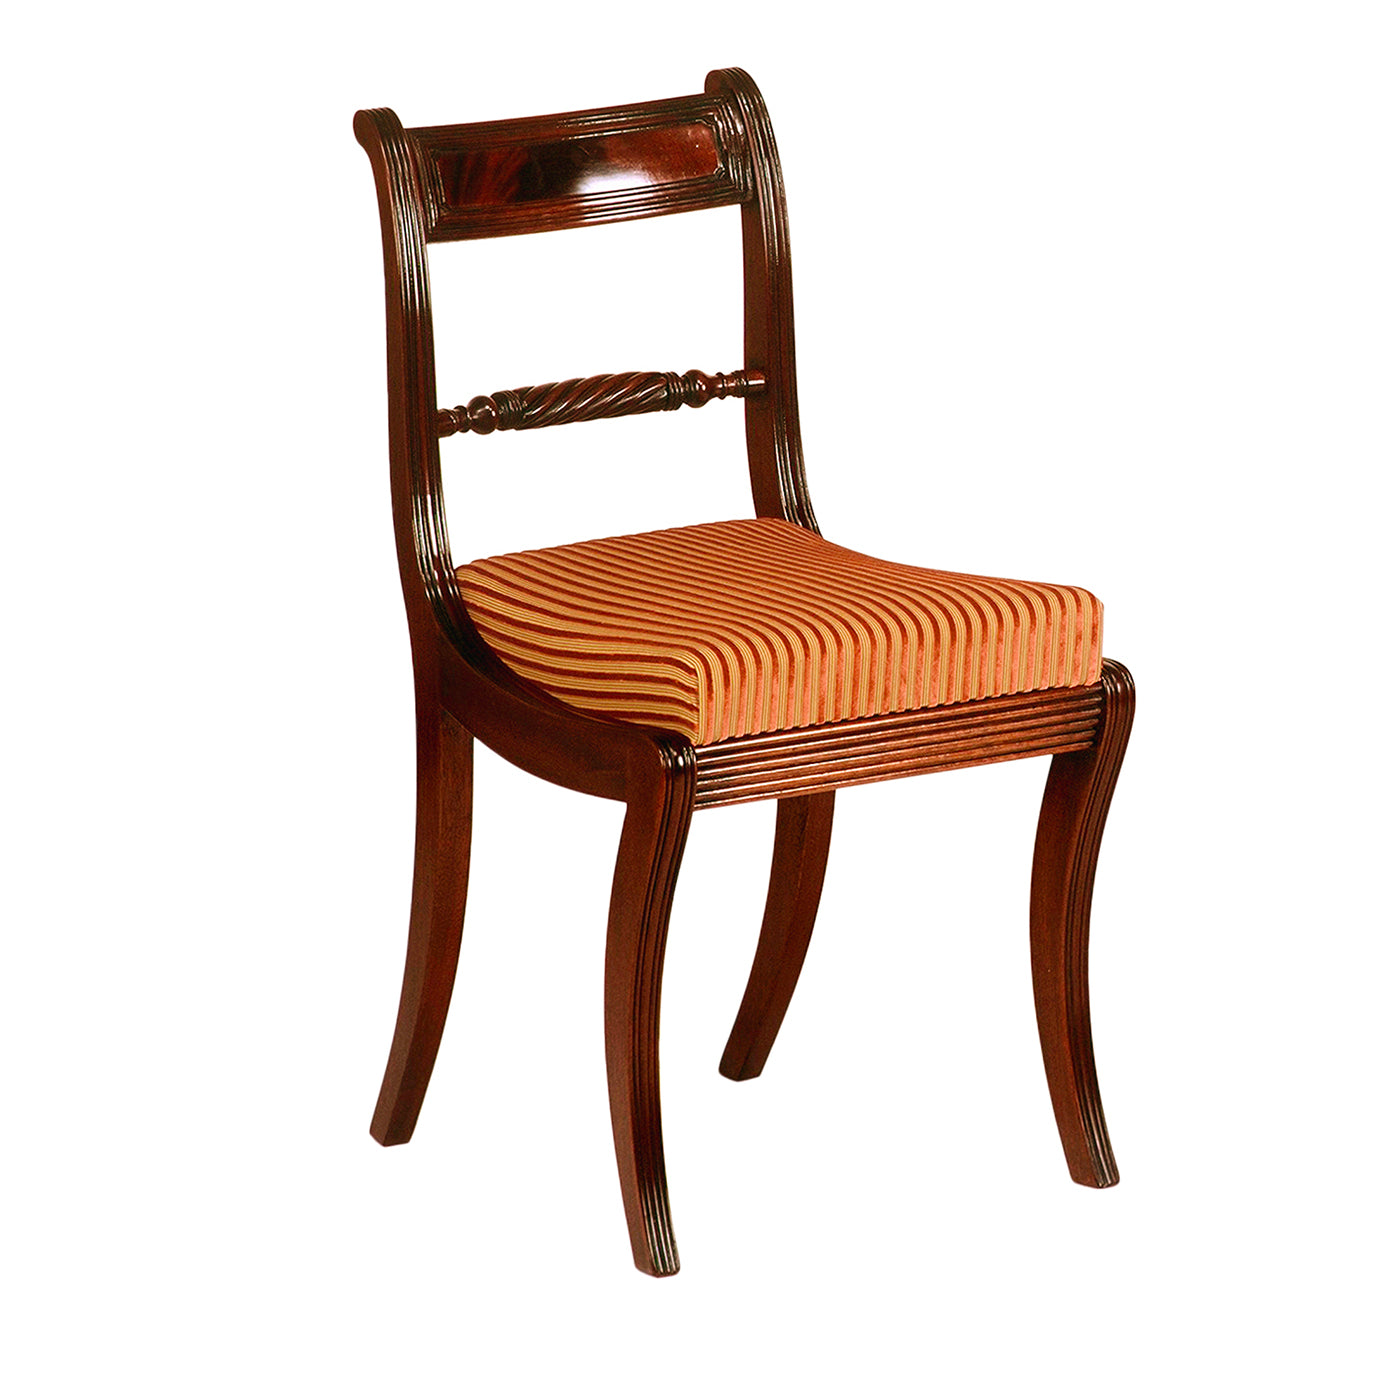 Mahagoni-Stuhl im Regency-Stil - Hauptansicht